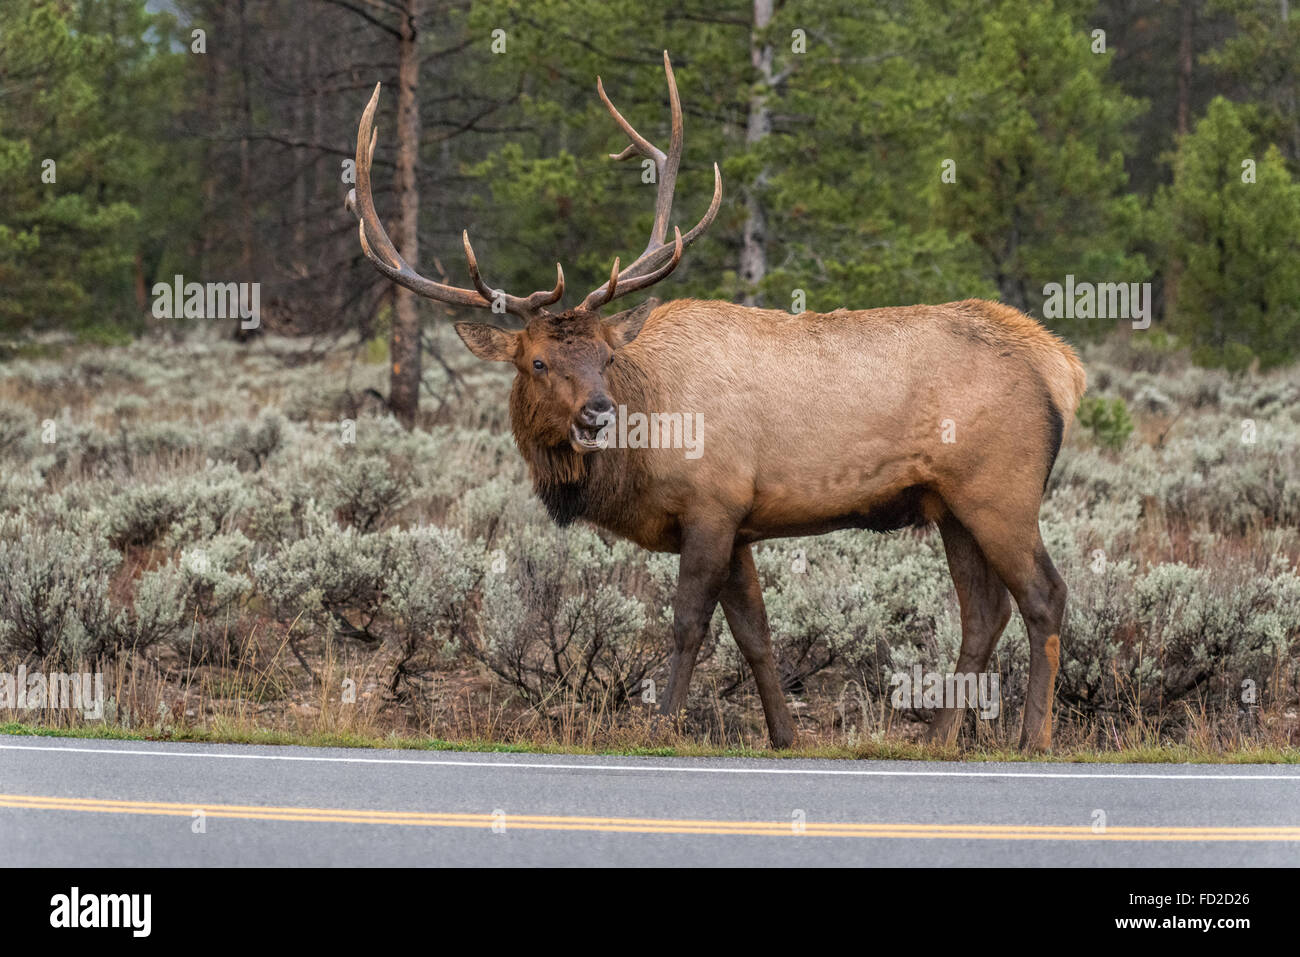 También se denominan wapiti Elk, una palabra nativa americana que significa "luz-color ciervo." Elk están relacionados a ciervos, pero son mucho más grandes Foto de stock